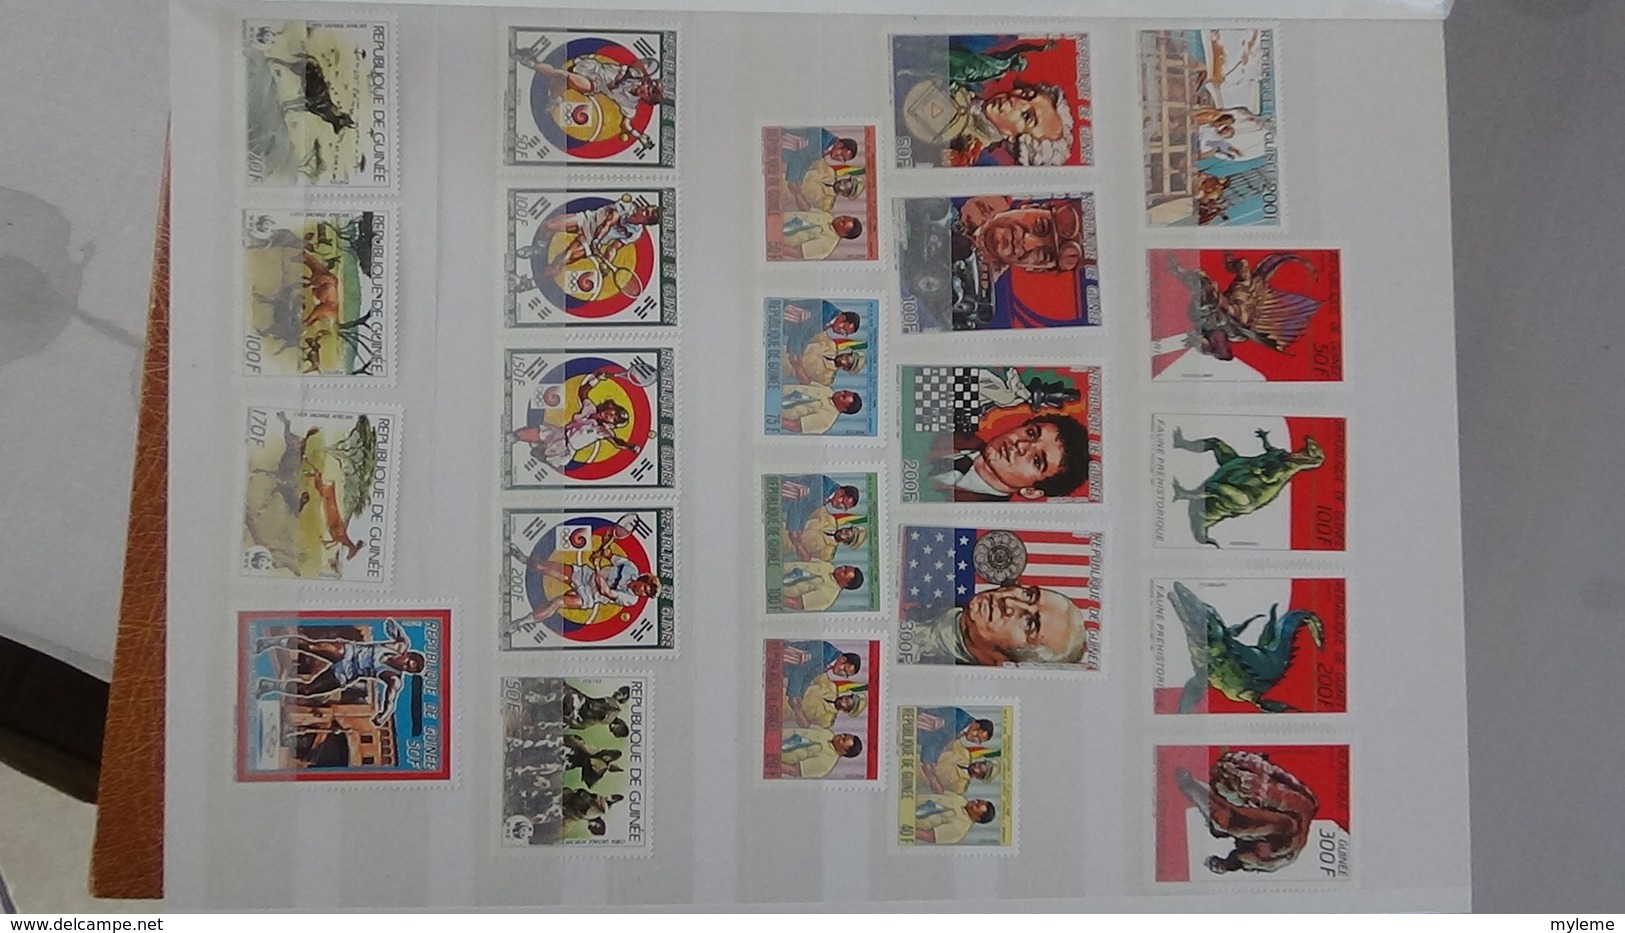 D15 Dispersion d'une très grosse collection de timbres et blocs ** dont Gabon, Guinée, Haute Volta. Voir commentair